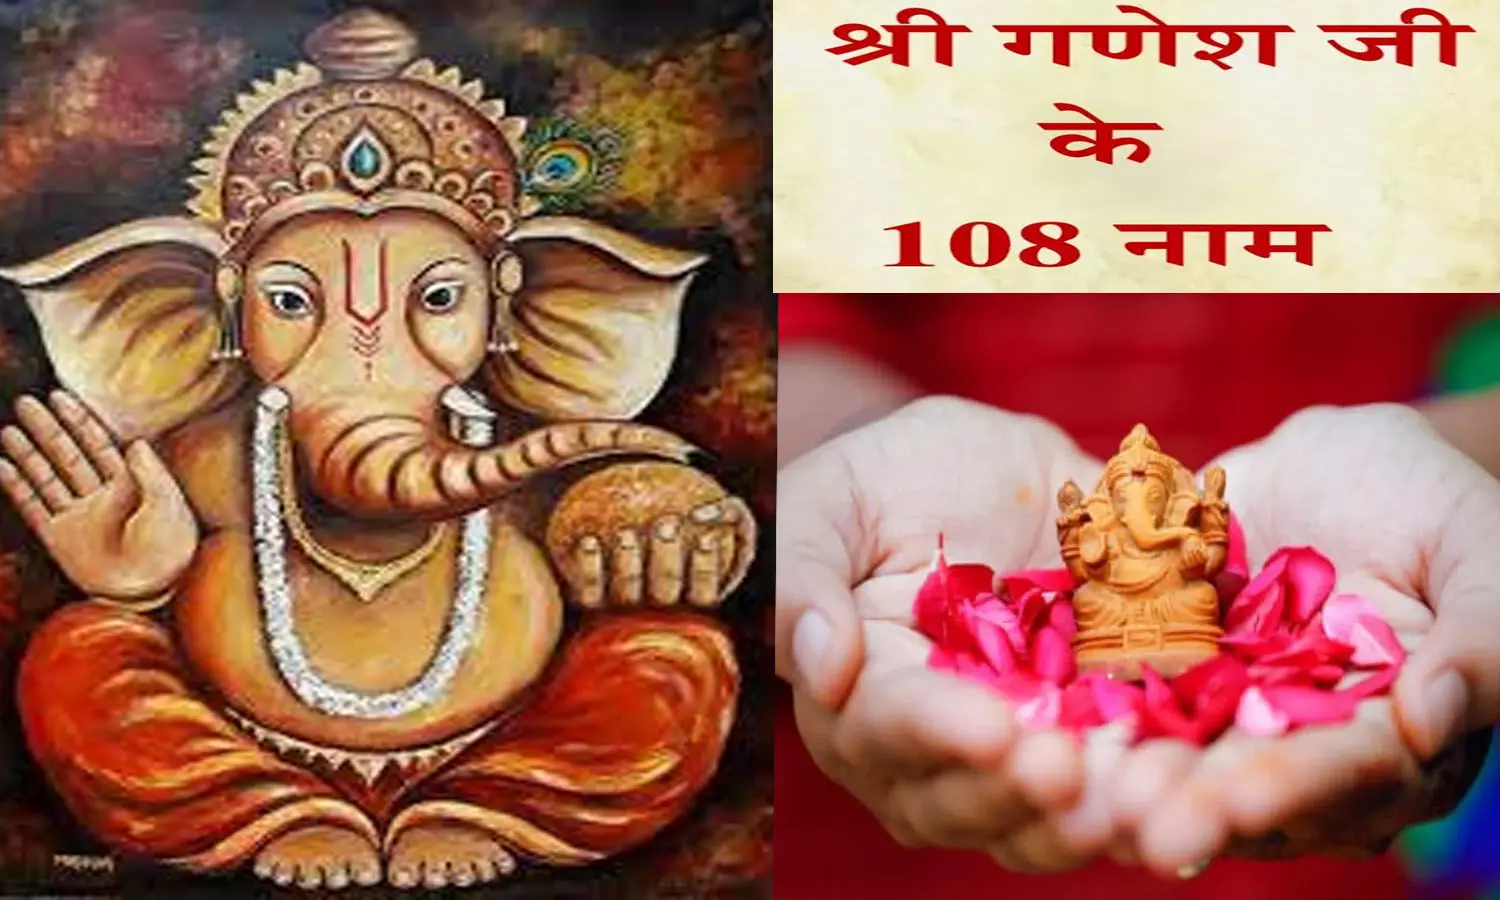 Bhagwan Ganesha Ji K 108 Naam Aur Mantra